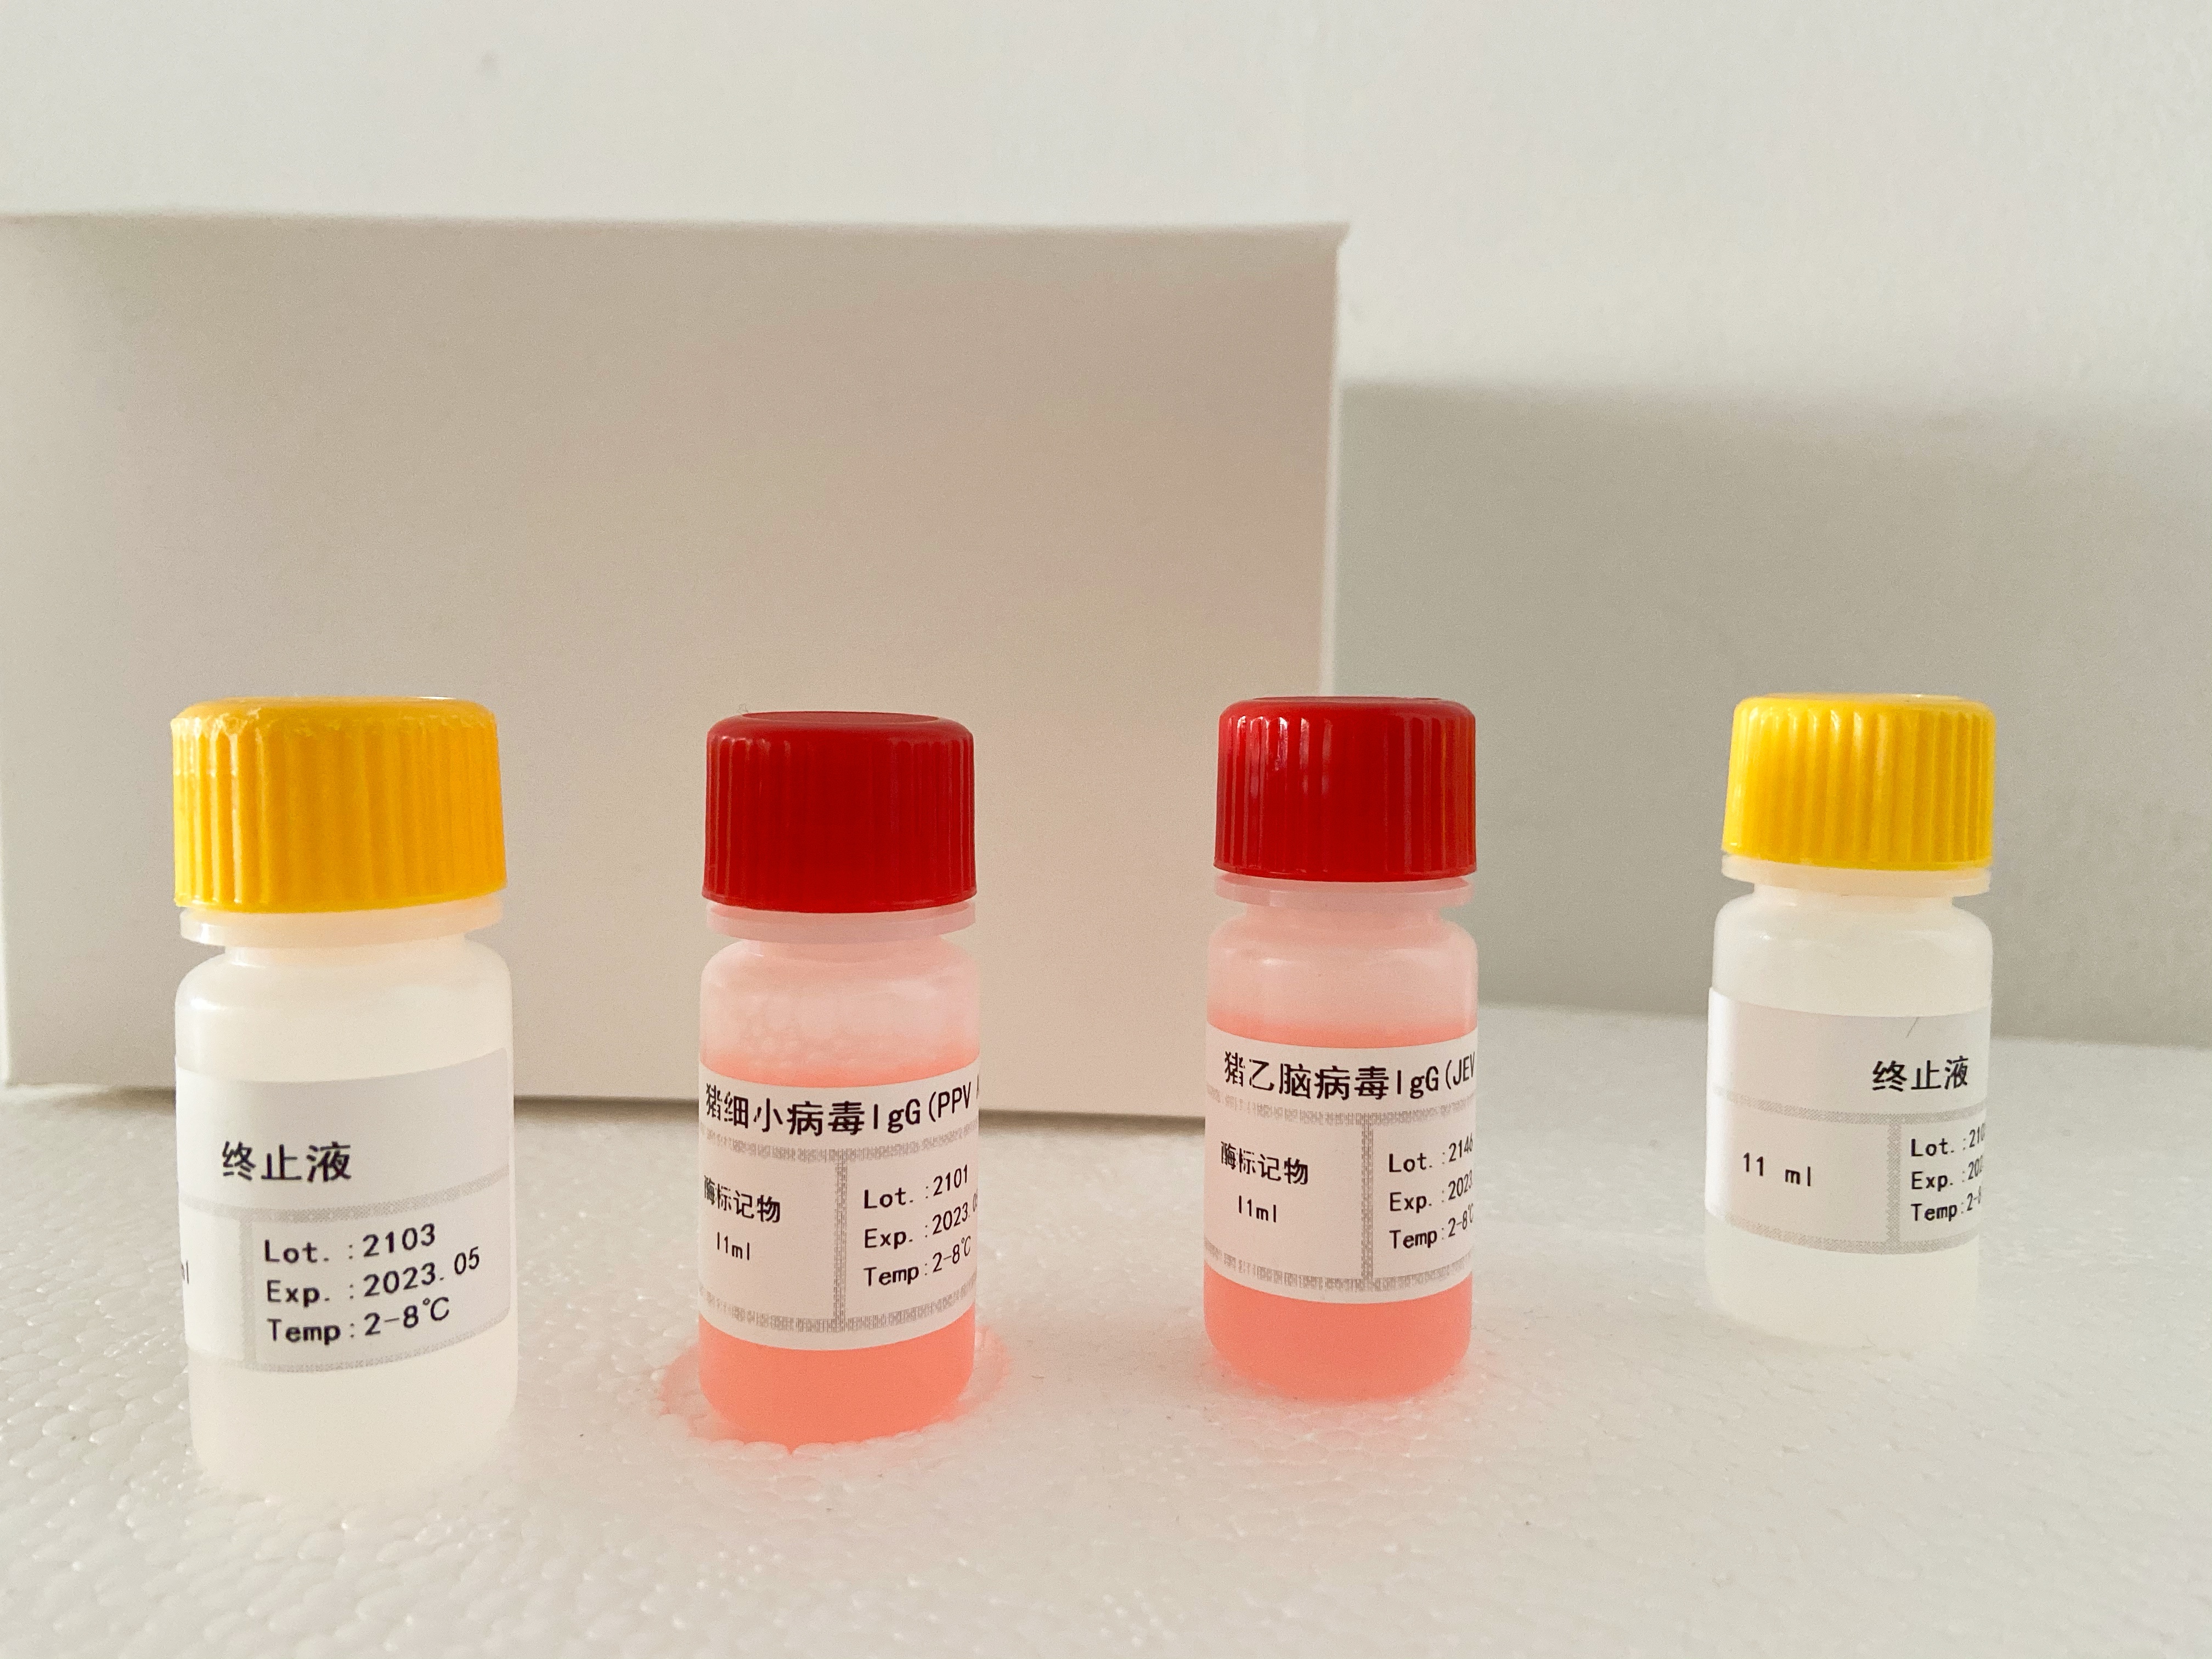 小鼠前列腺特异性抗原(PSA)检测试剂盒